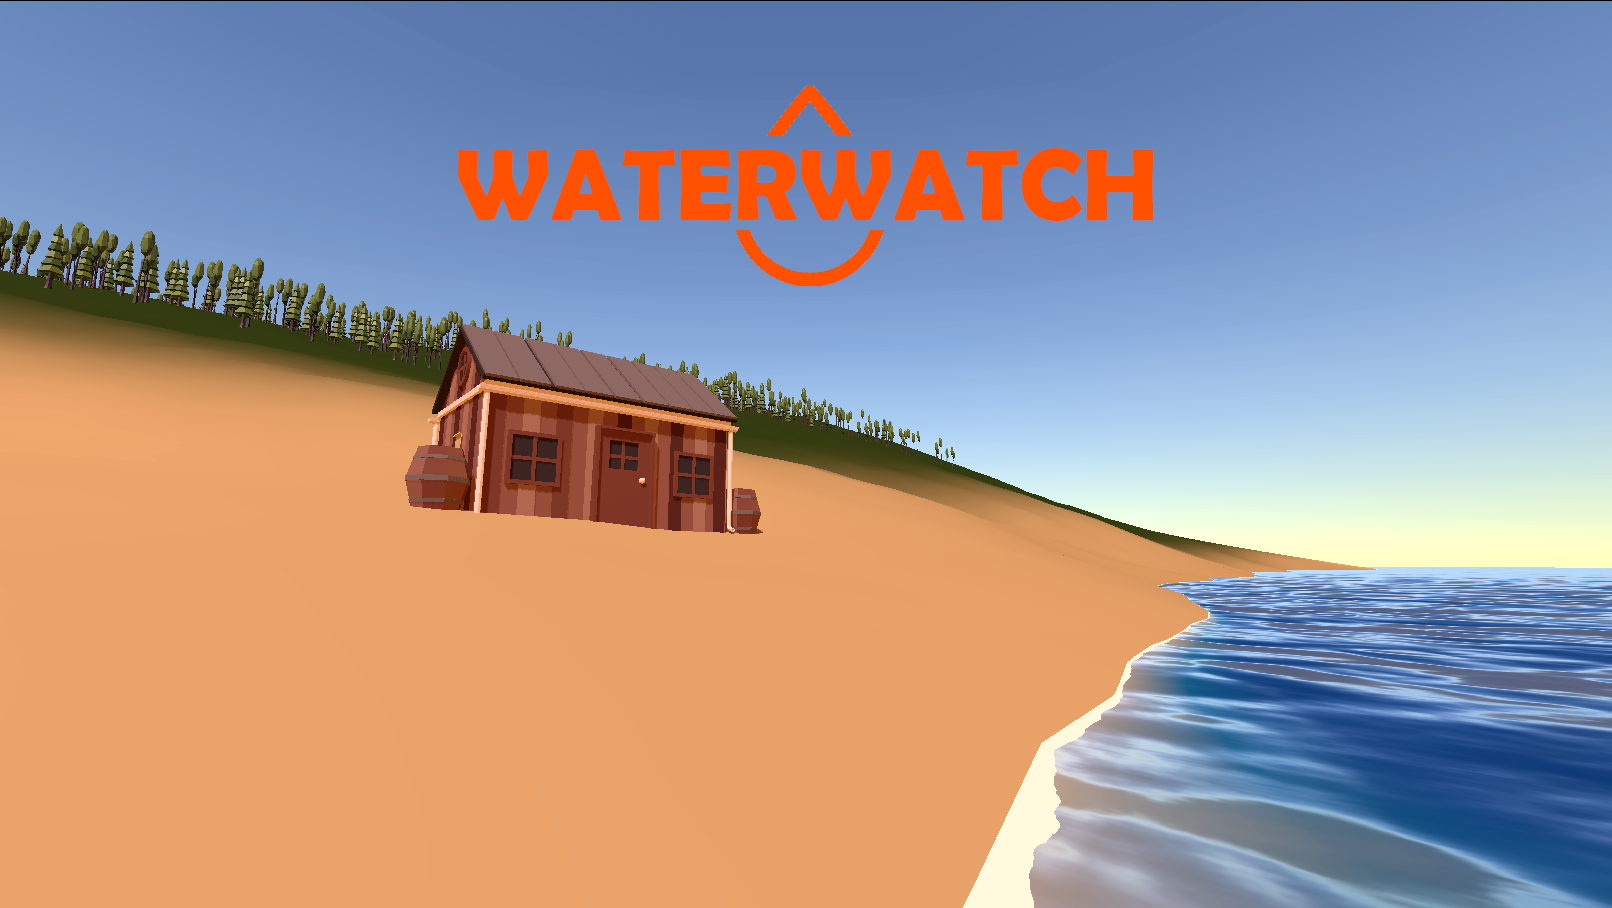 Waterwatch